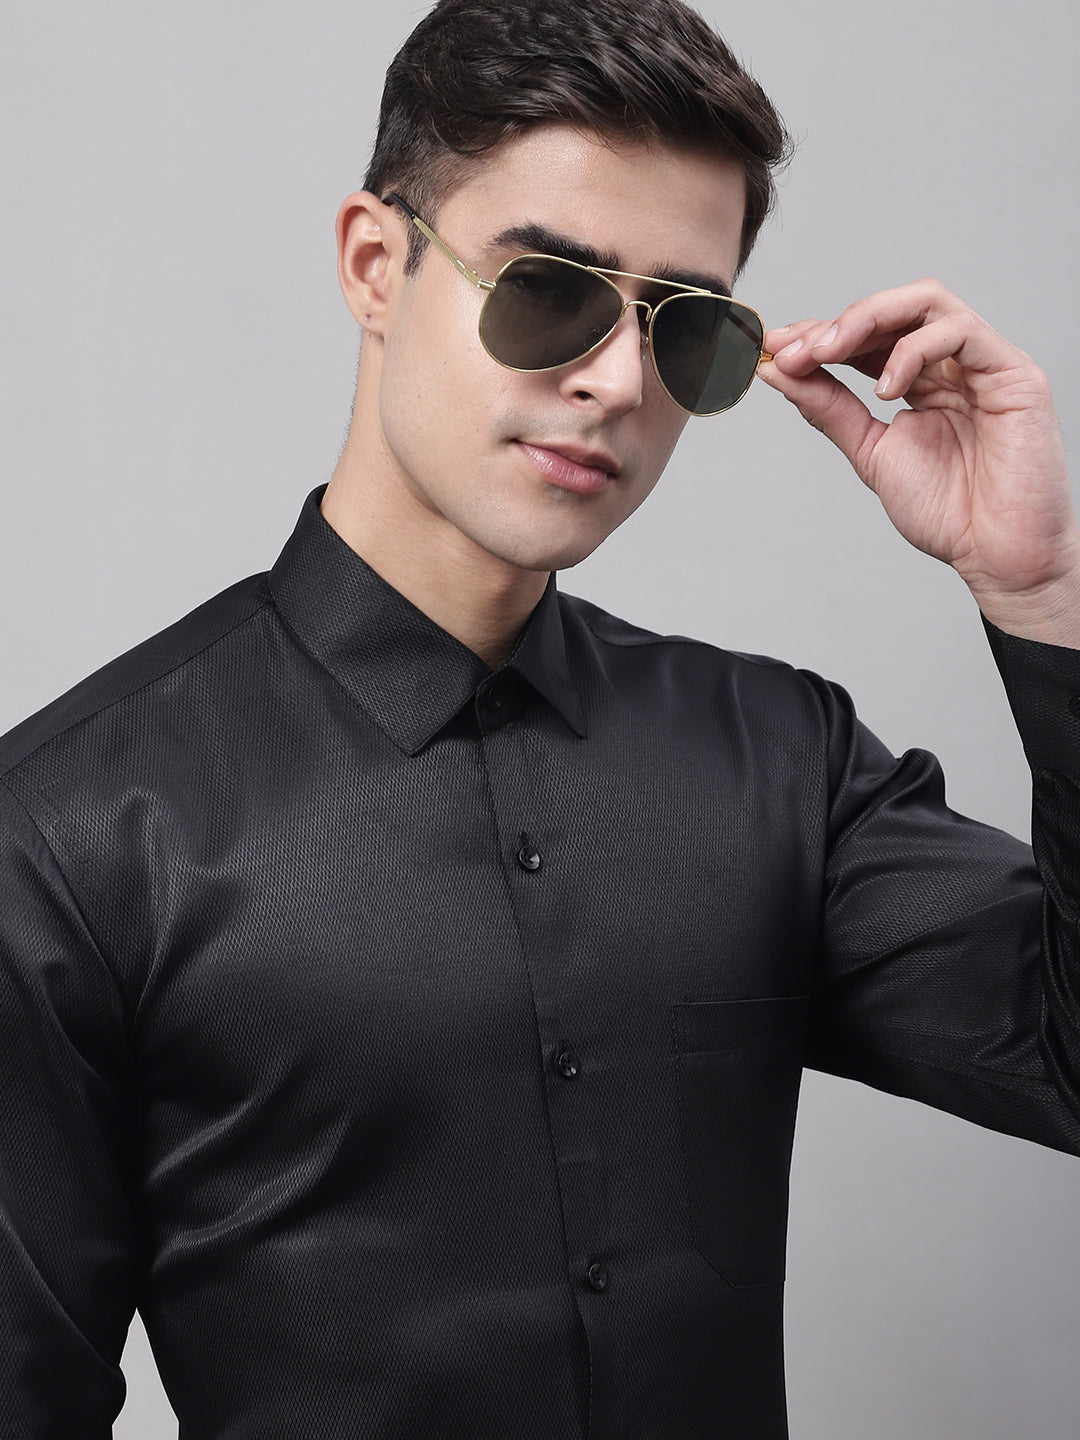 Men's Black Dobby Textured Formal Shirt